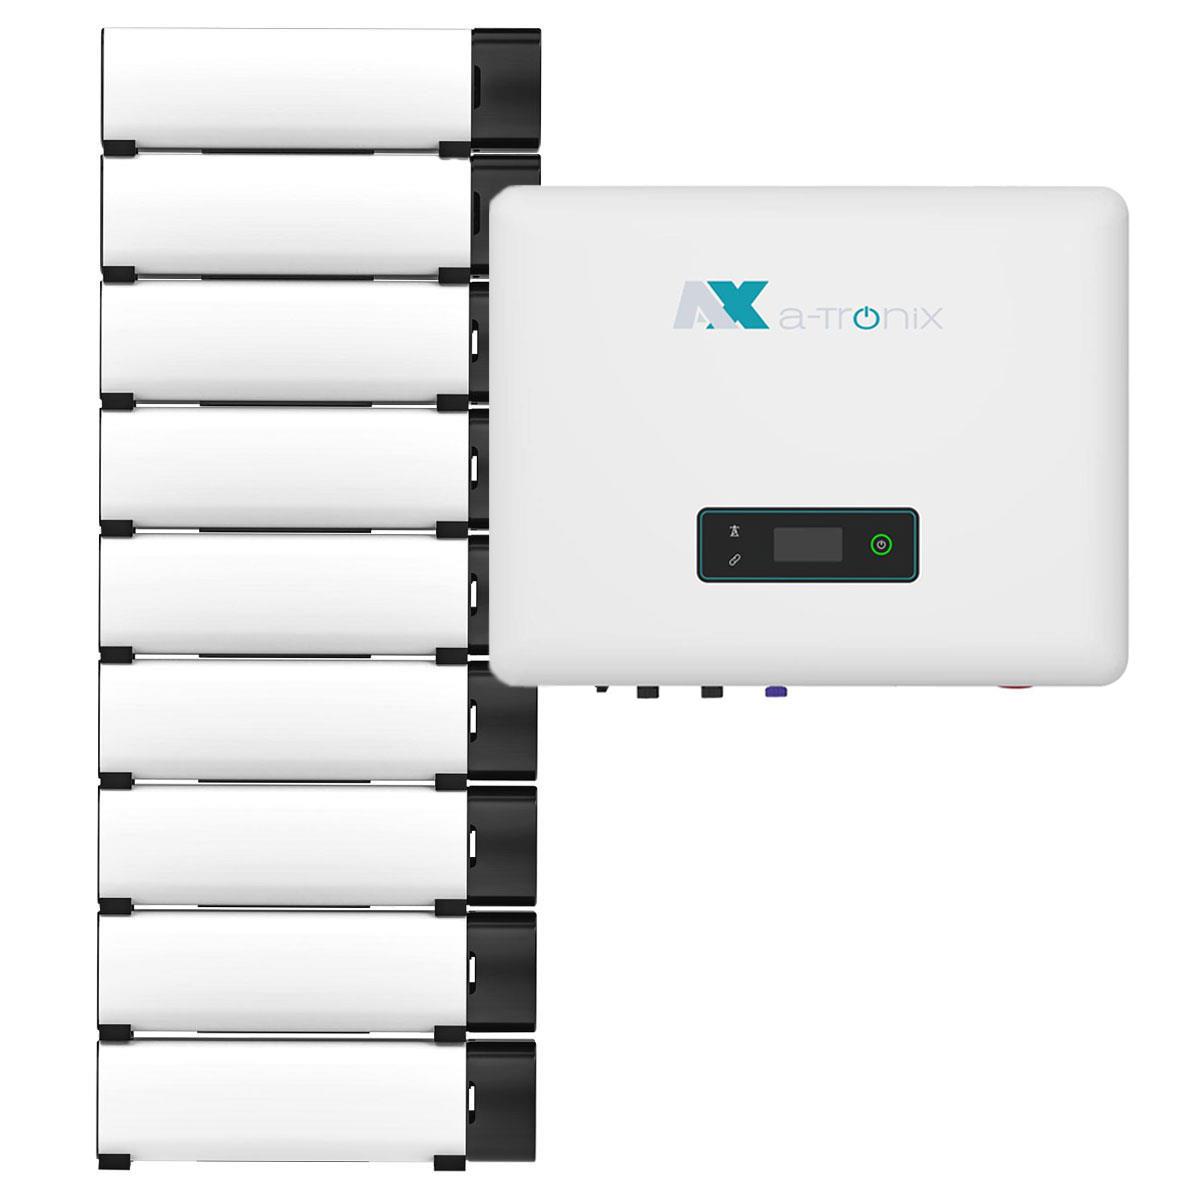 a-TroniX AX2 20kWp PV Komplettanlage mit Solarmodulen und 18,4kWh Speicher